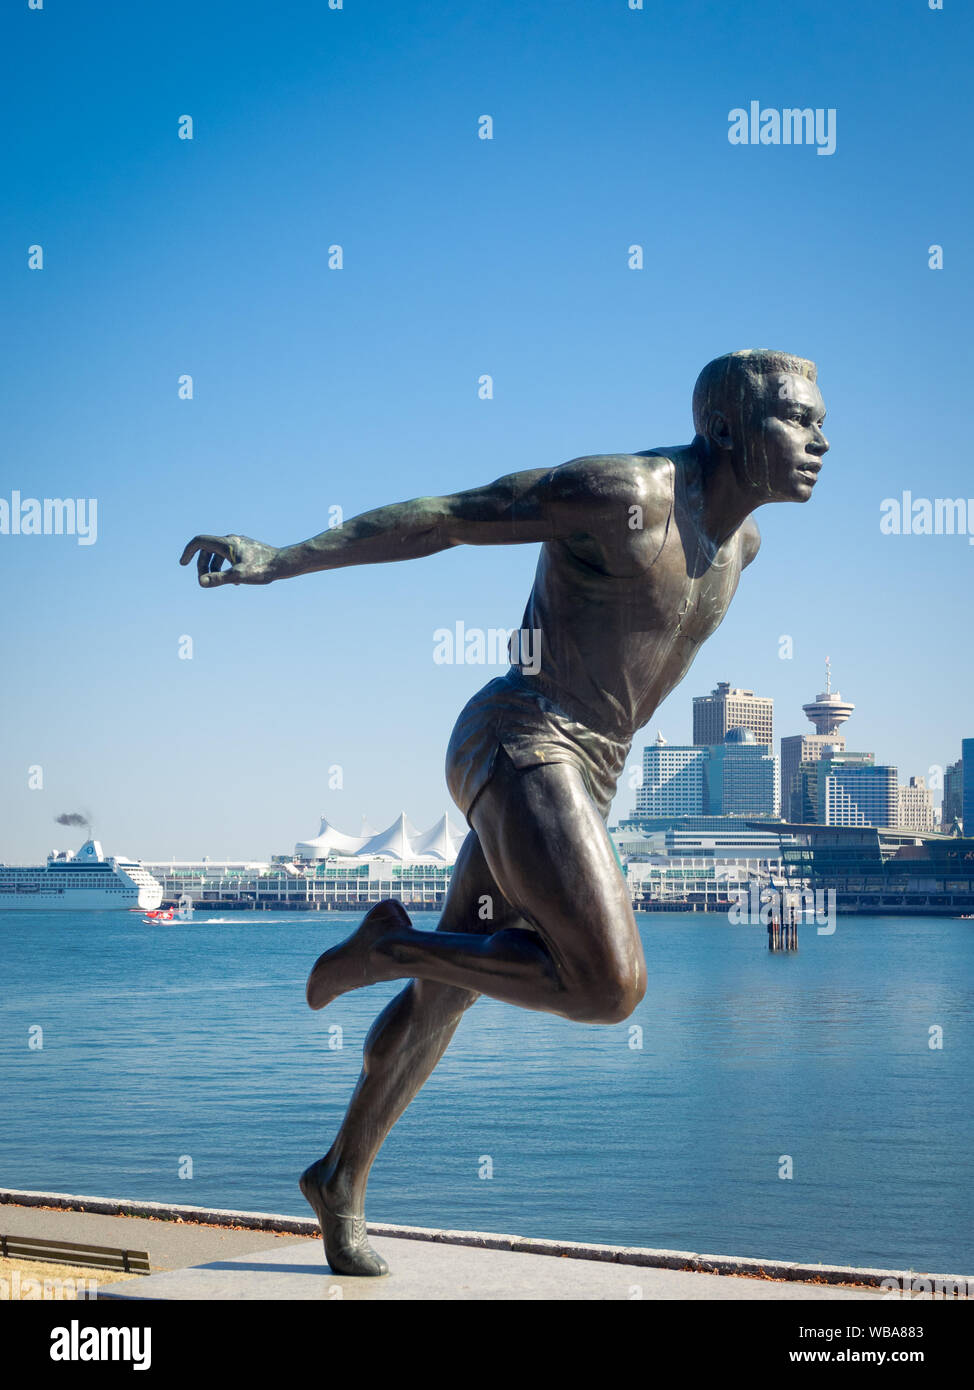 Une sculpture de l'Association canadienne d'athlétisme Harry Jerome star dans le parc Stanley à Vancouver skyline. Vancouver, Colombie-Britannique, Canada Banque D'Images